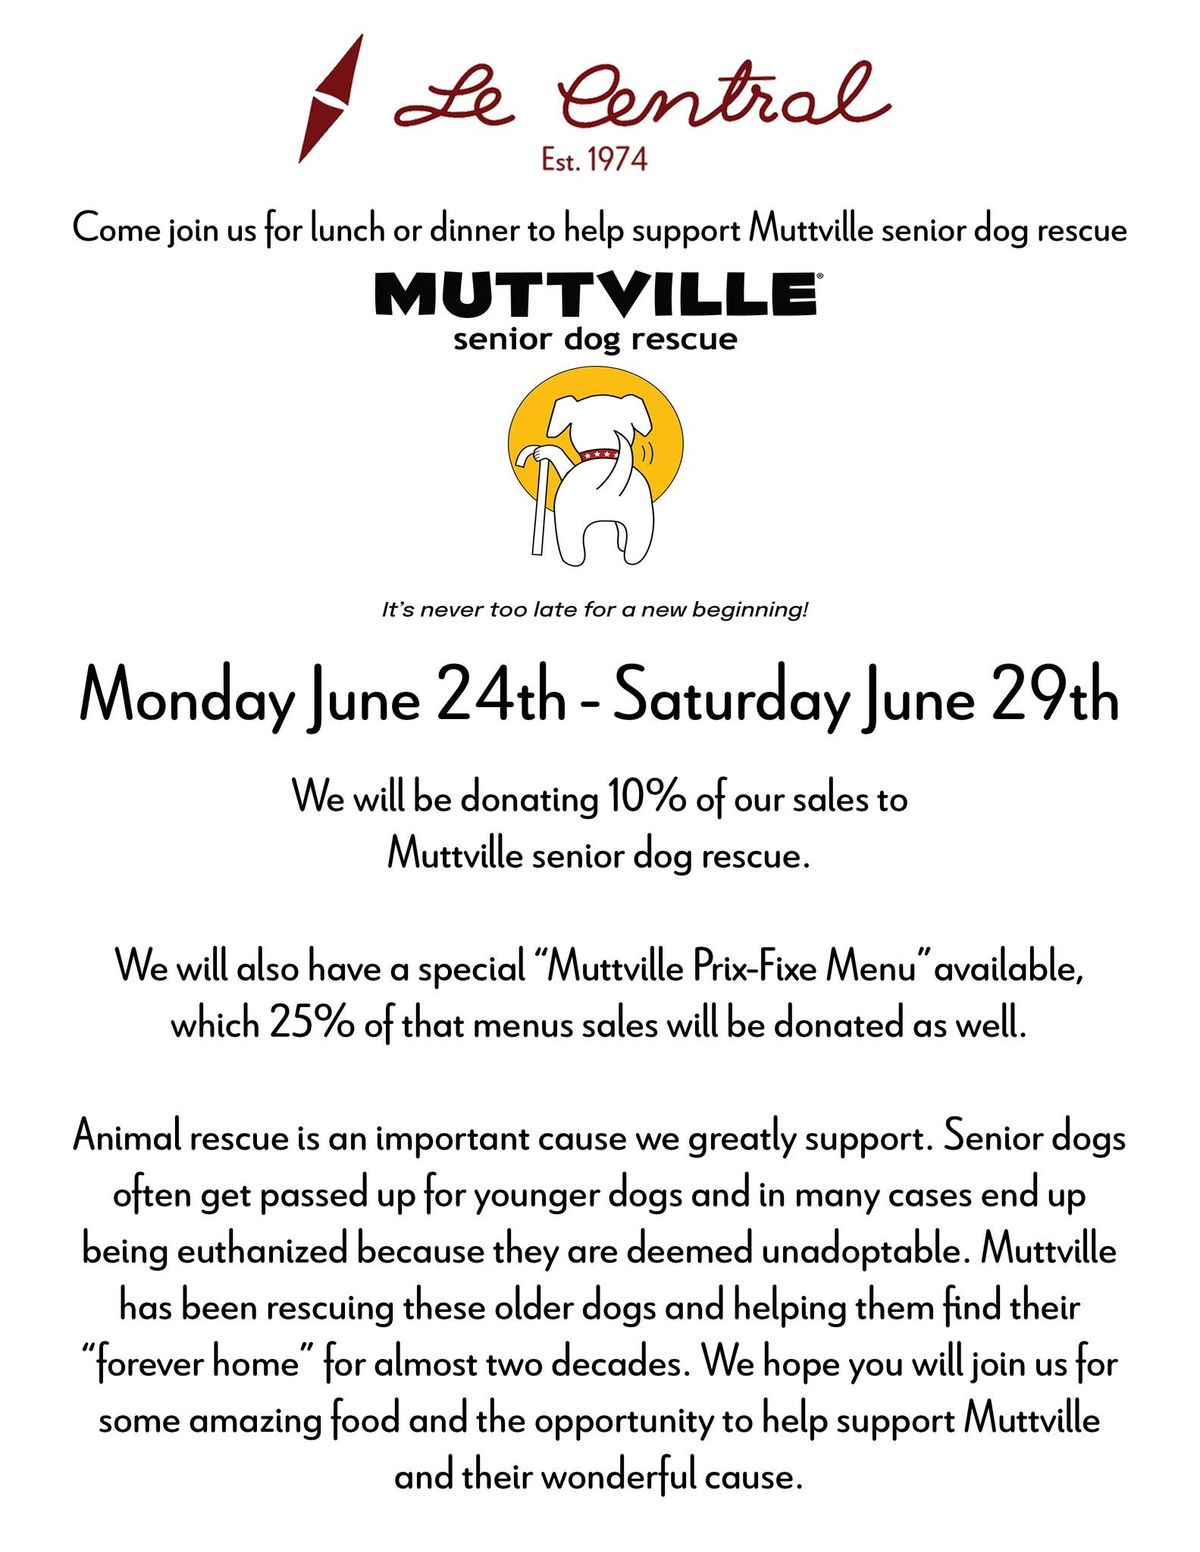 Fundraiser for Muttville Senior Dog Rescue